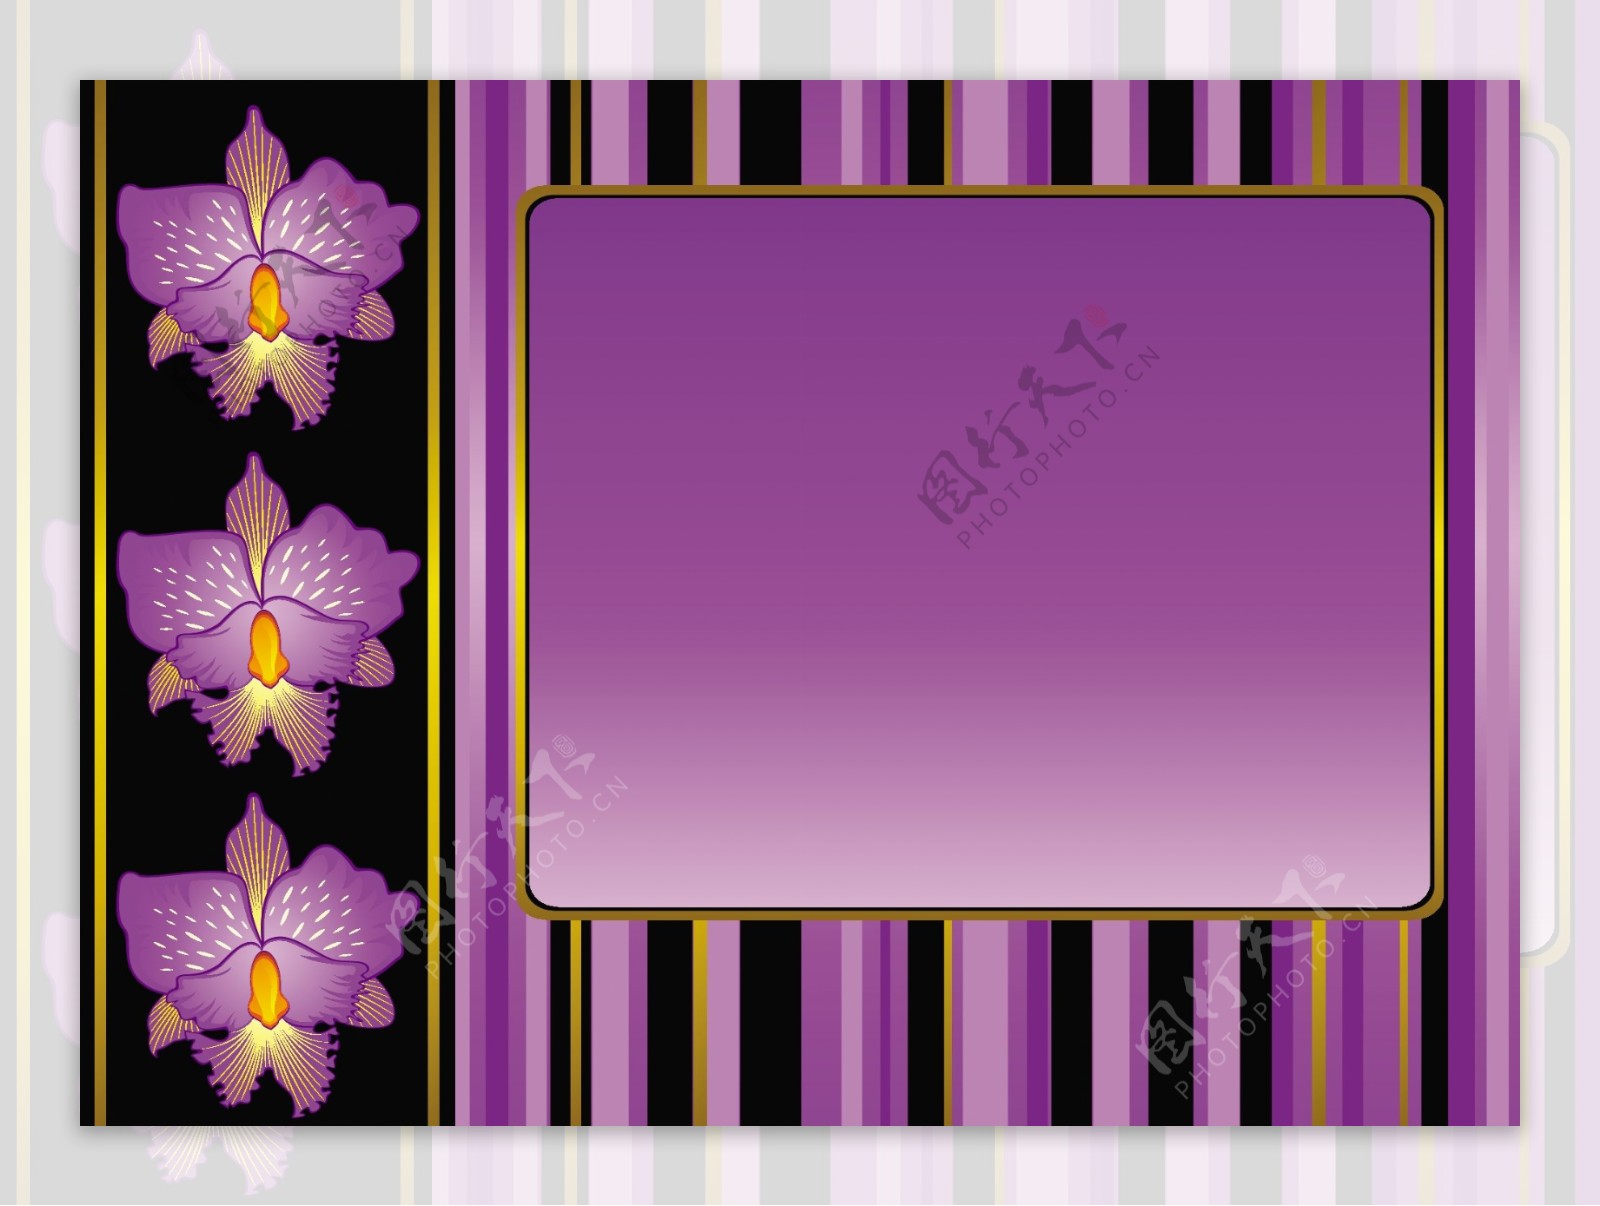 矢量图紫色鲜花装饰框